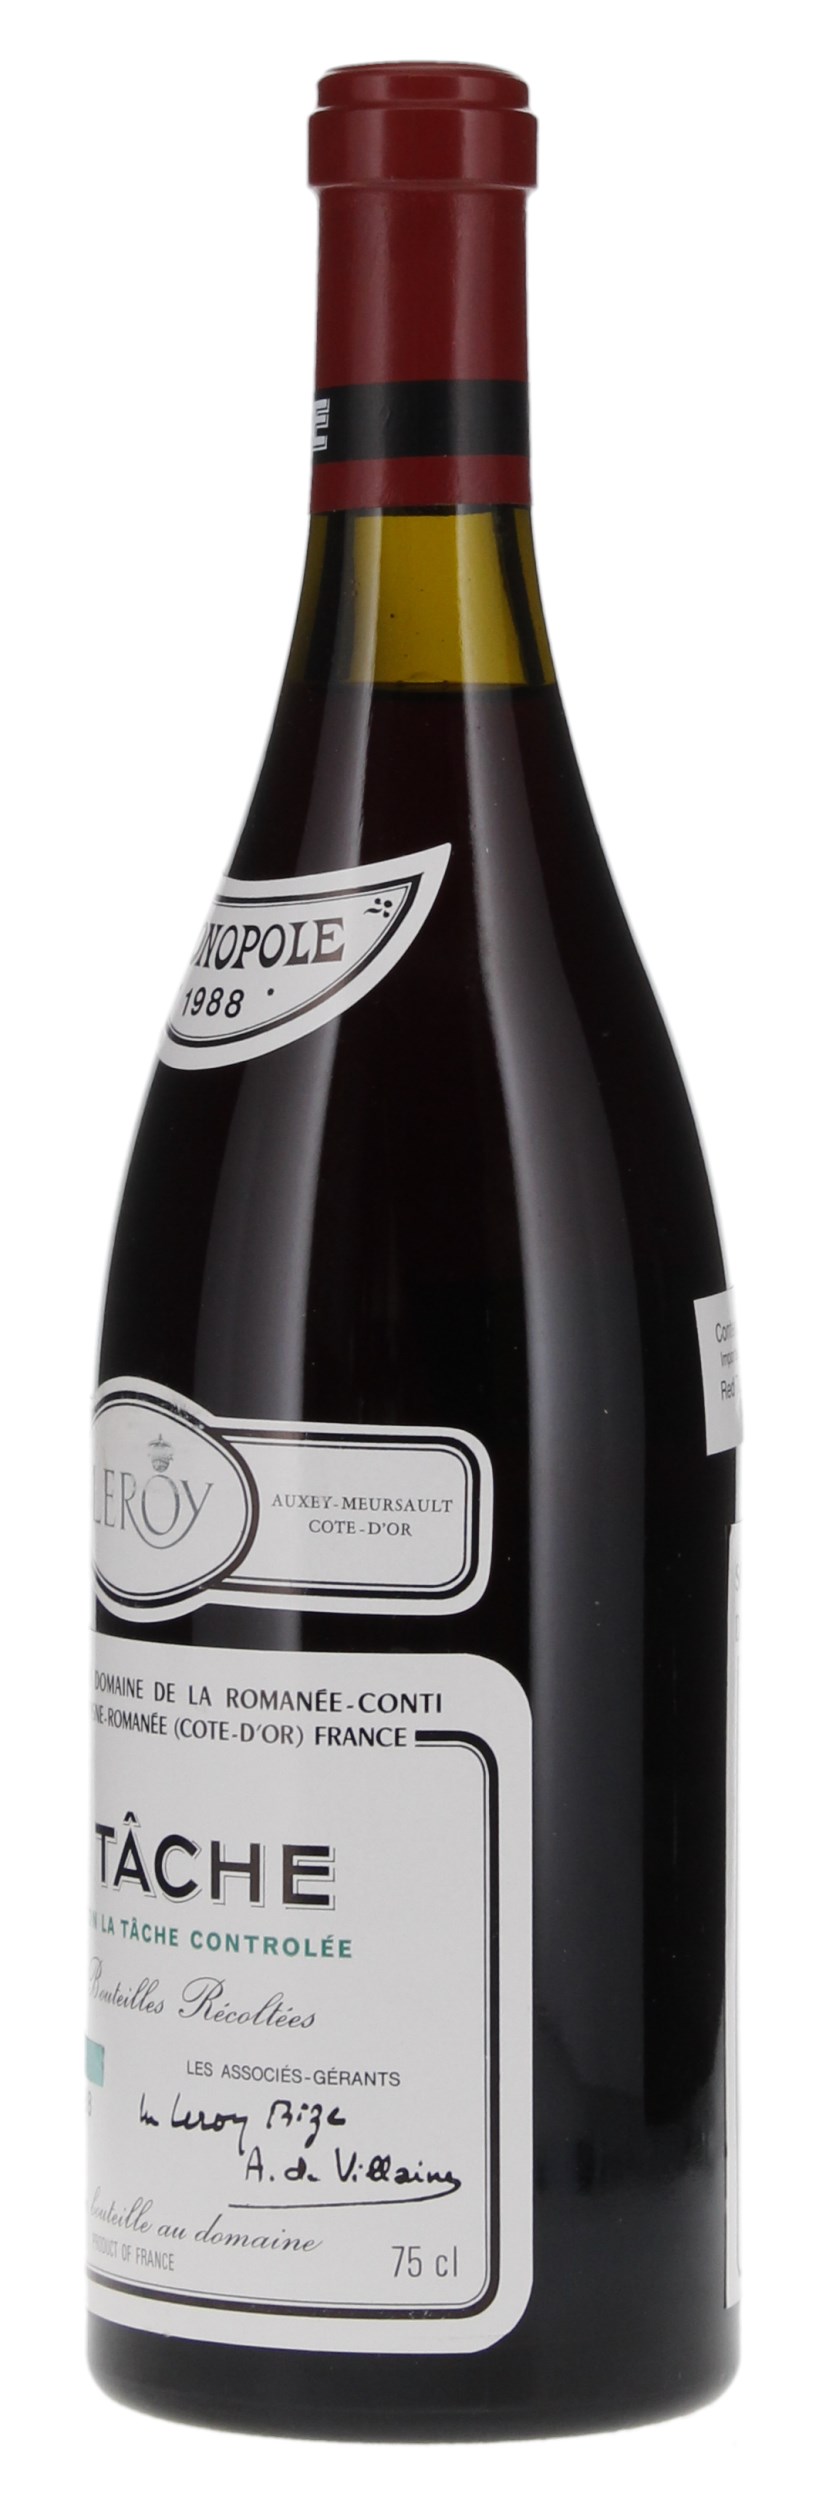 1988 Domaine de la Romanee-Conti La Tache Pinot Noir Grand Cru